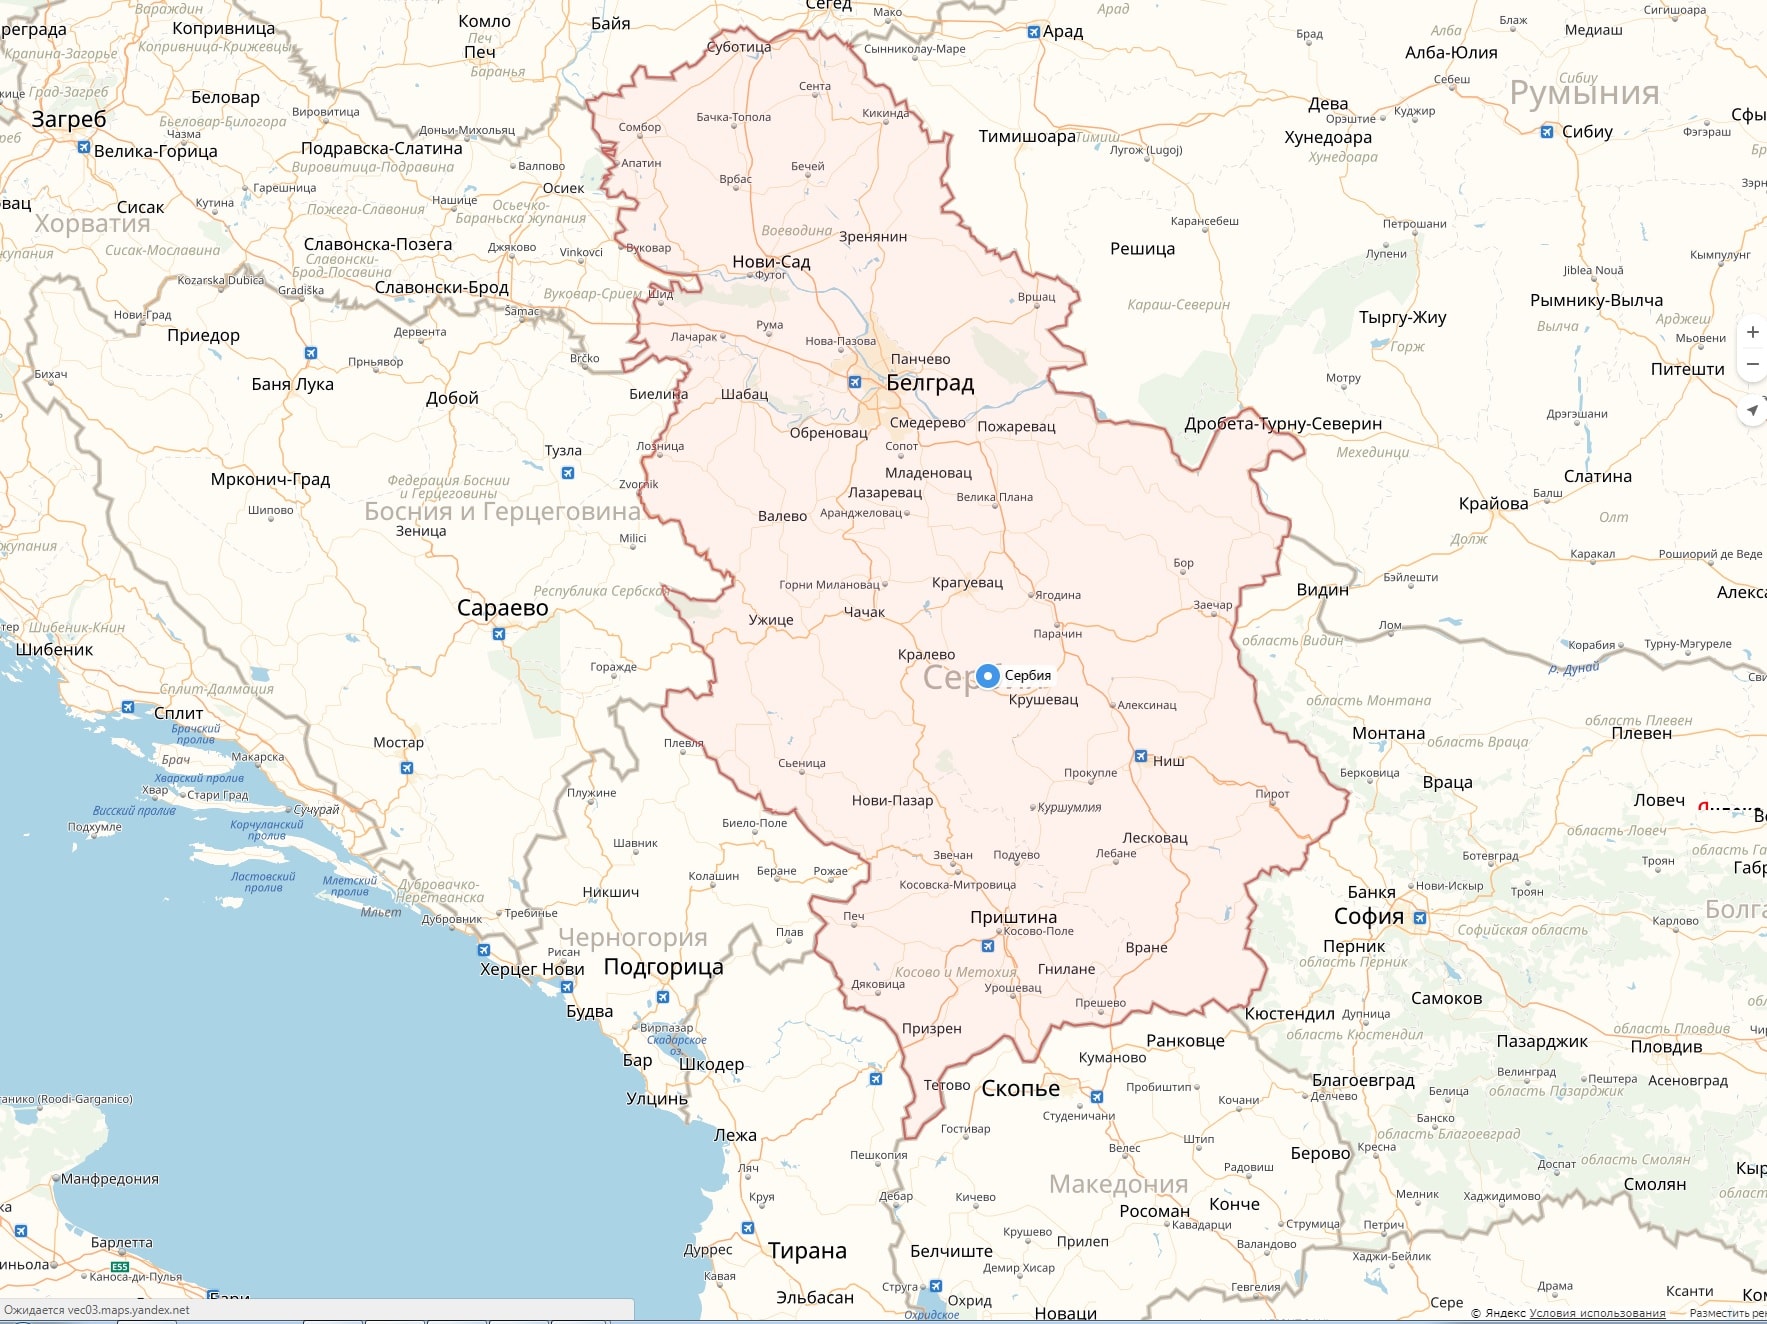 Сербия на карте мира